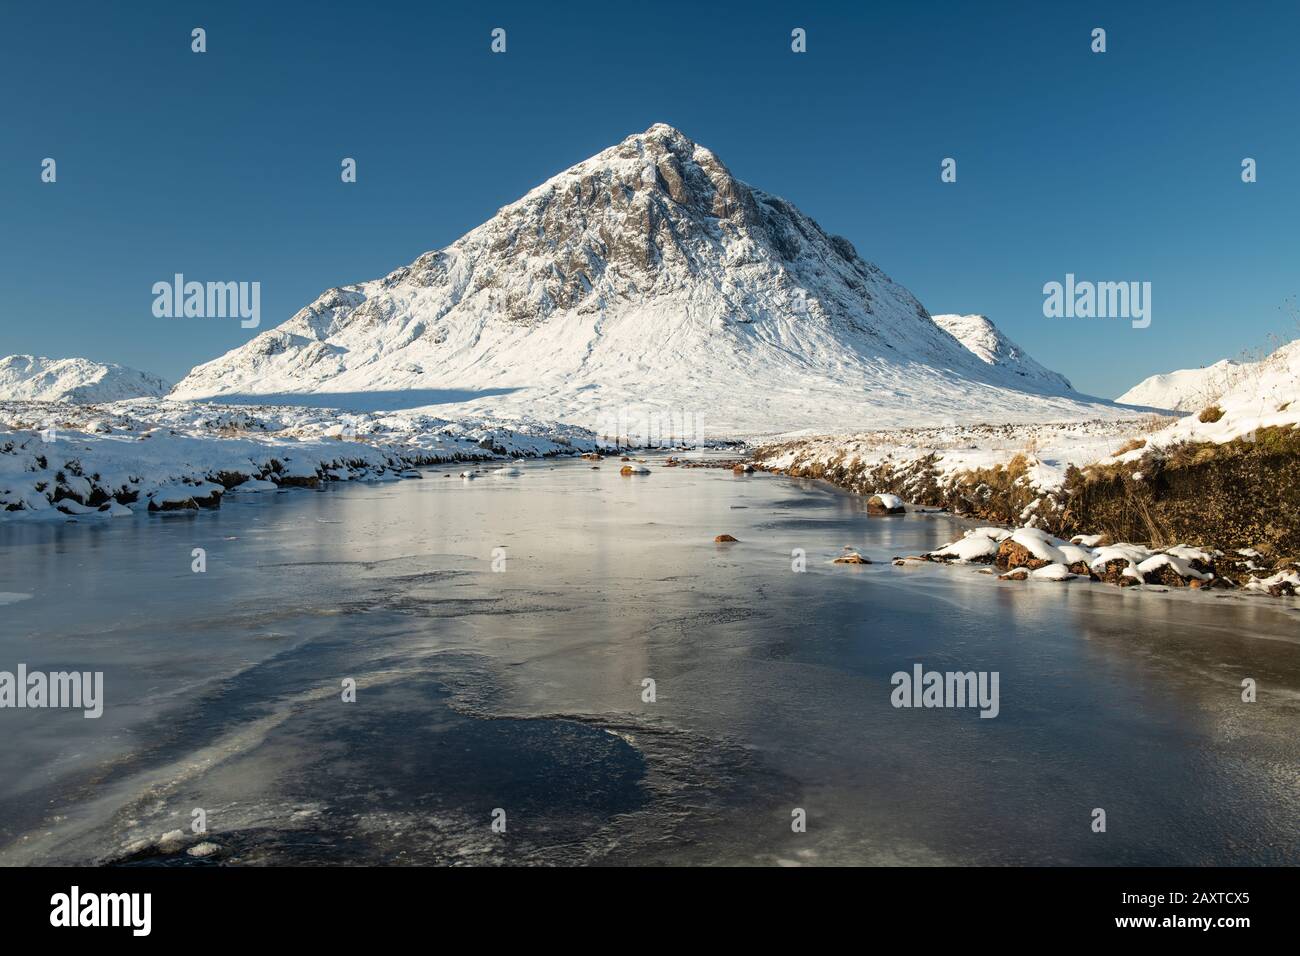 El invierno en las Tierras Altas de Escocia Foto de stock